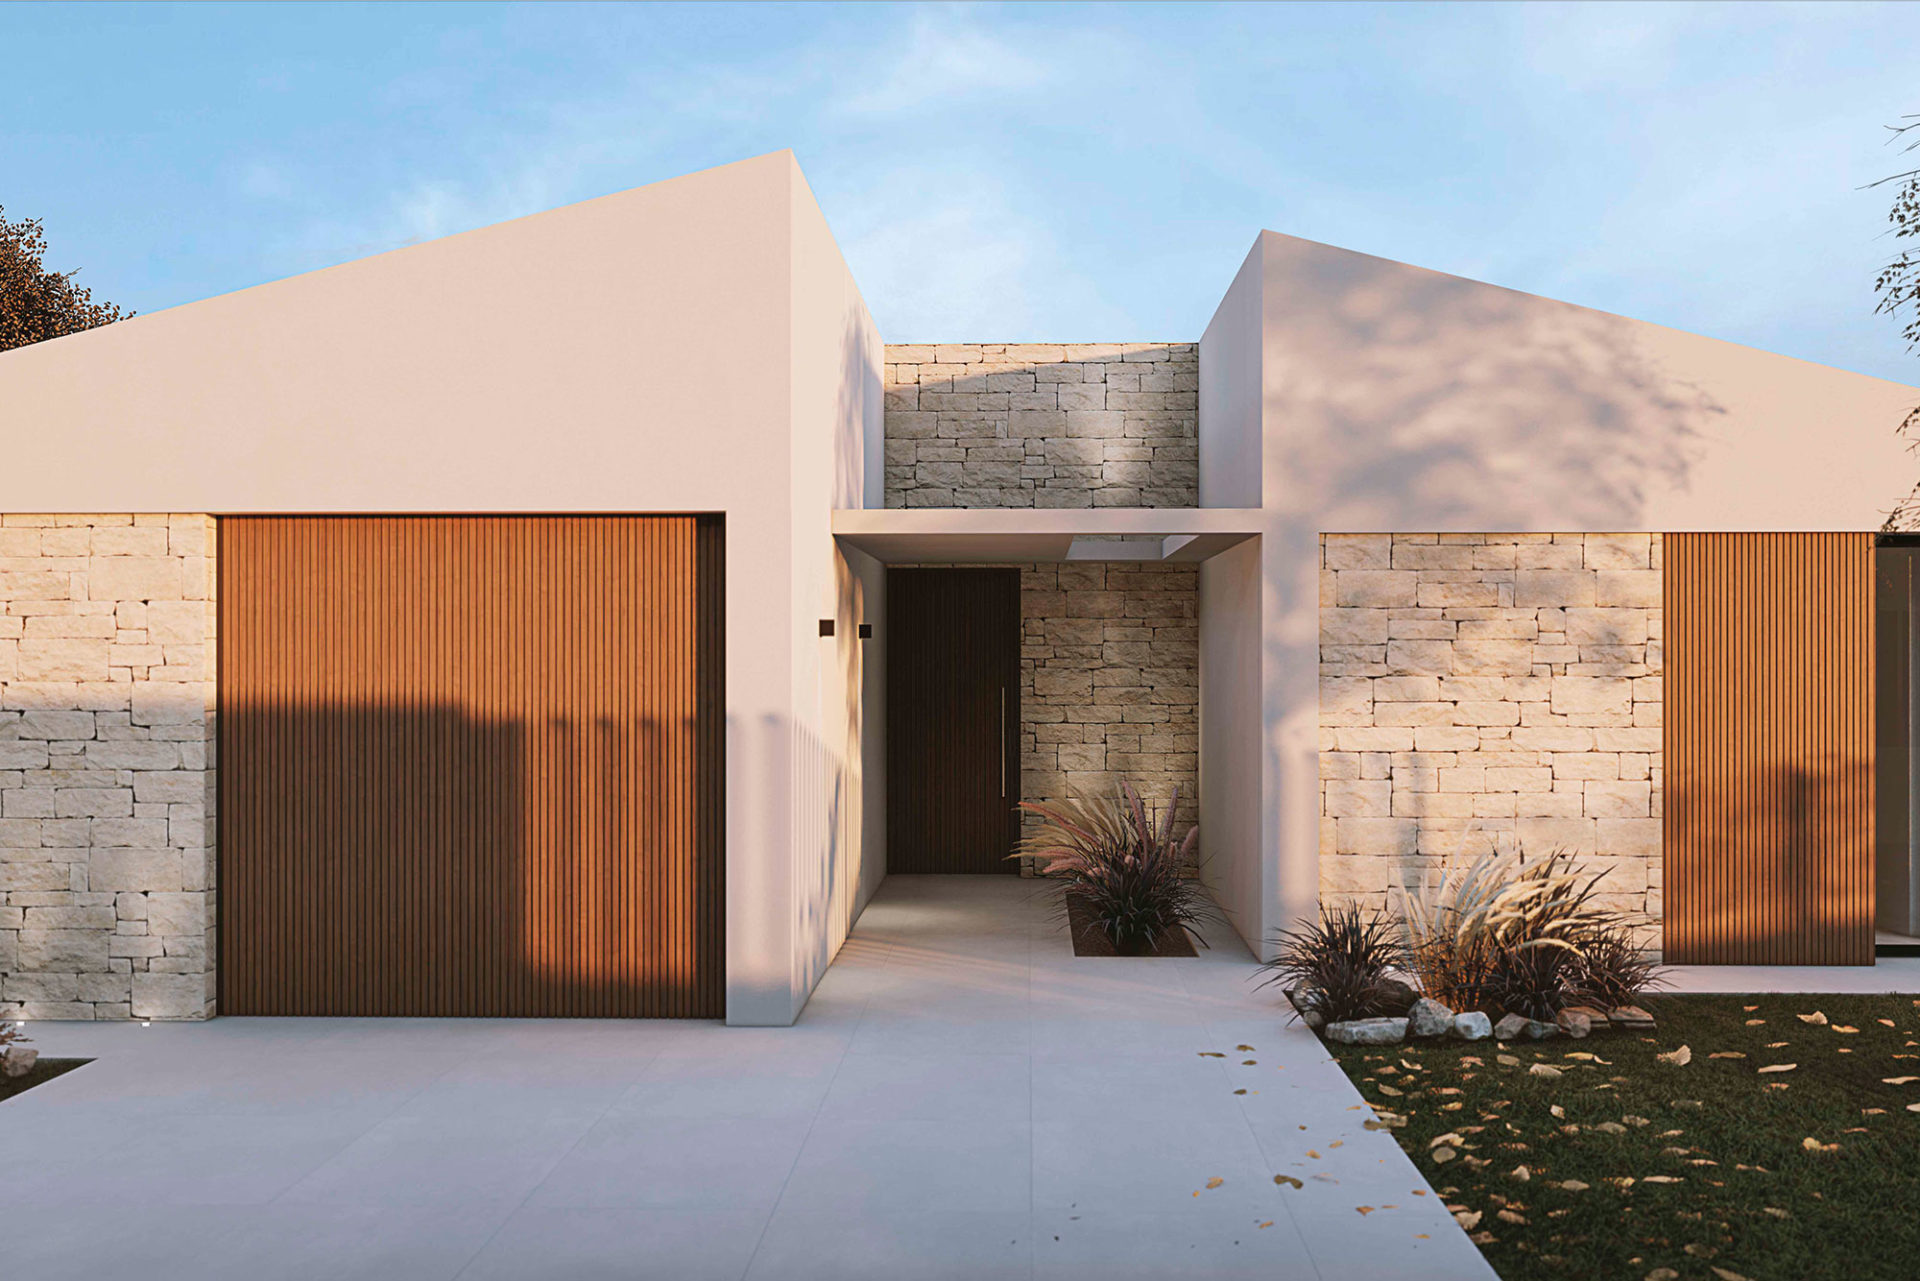 Proyecto interiorismo, arquitectura y paisajismo unifamiliar en valencia fachada exterior piedra seca y alistonado de dia